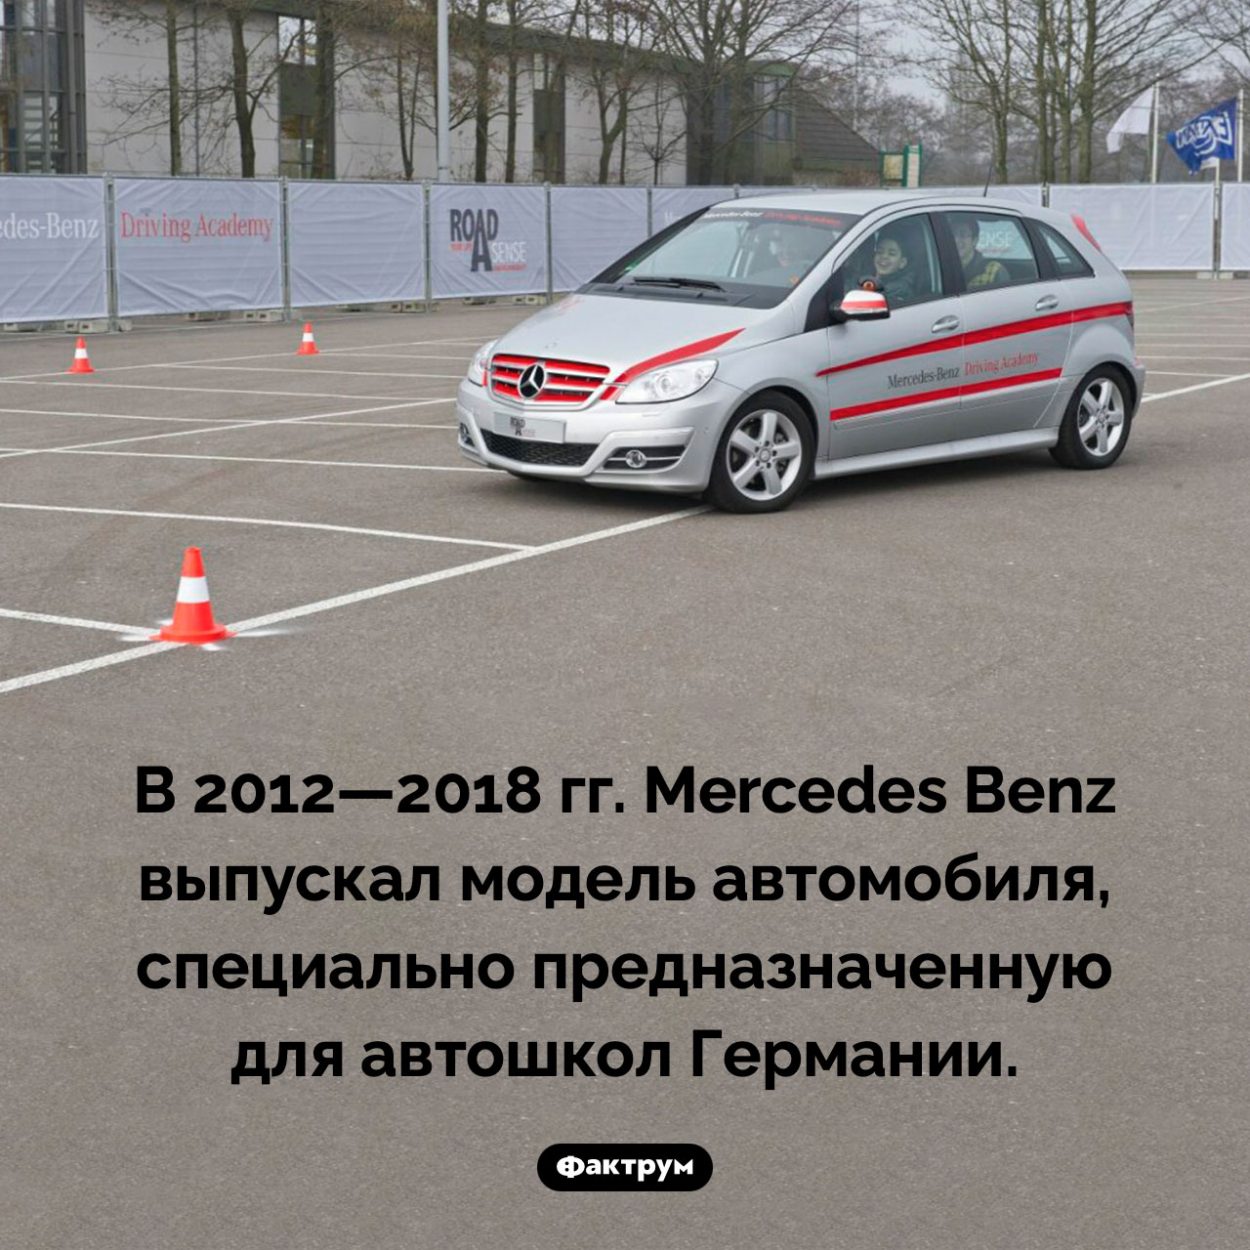 Специальный Мерседес для учащихся вождению. В 2012—2018 гг. Mercedes Benz выпускал модель автомобиля, специально предназначенную для автошкол Германии.